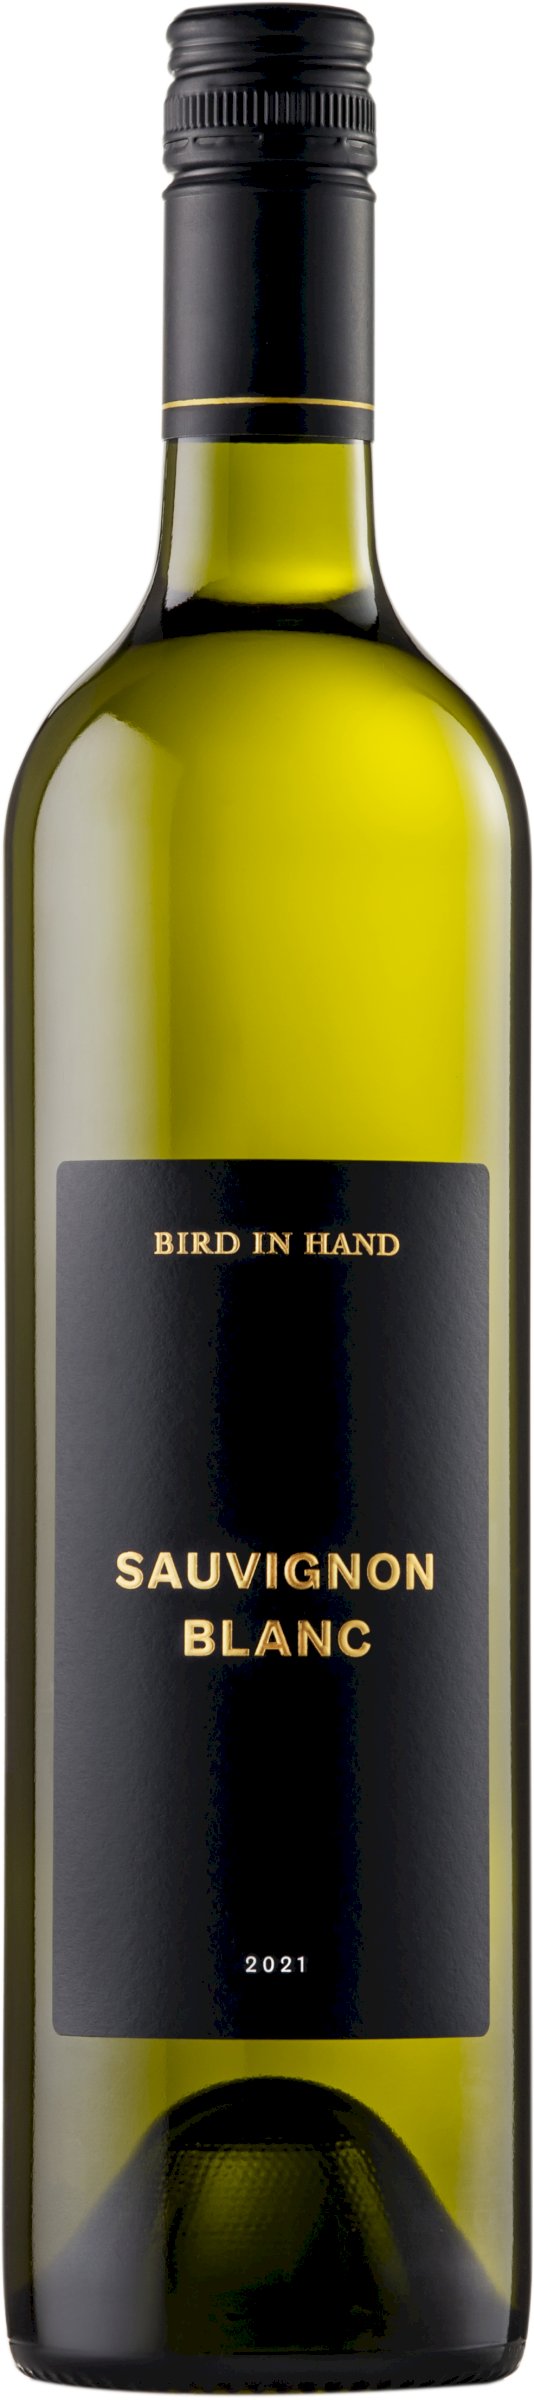 Bird in the Hand wines